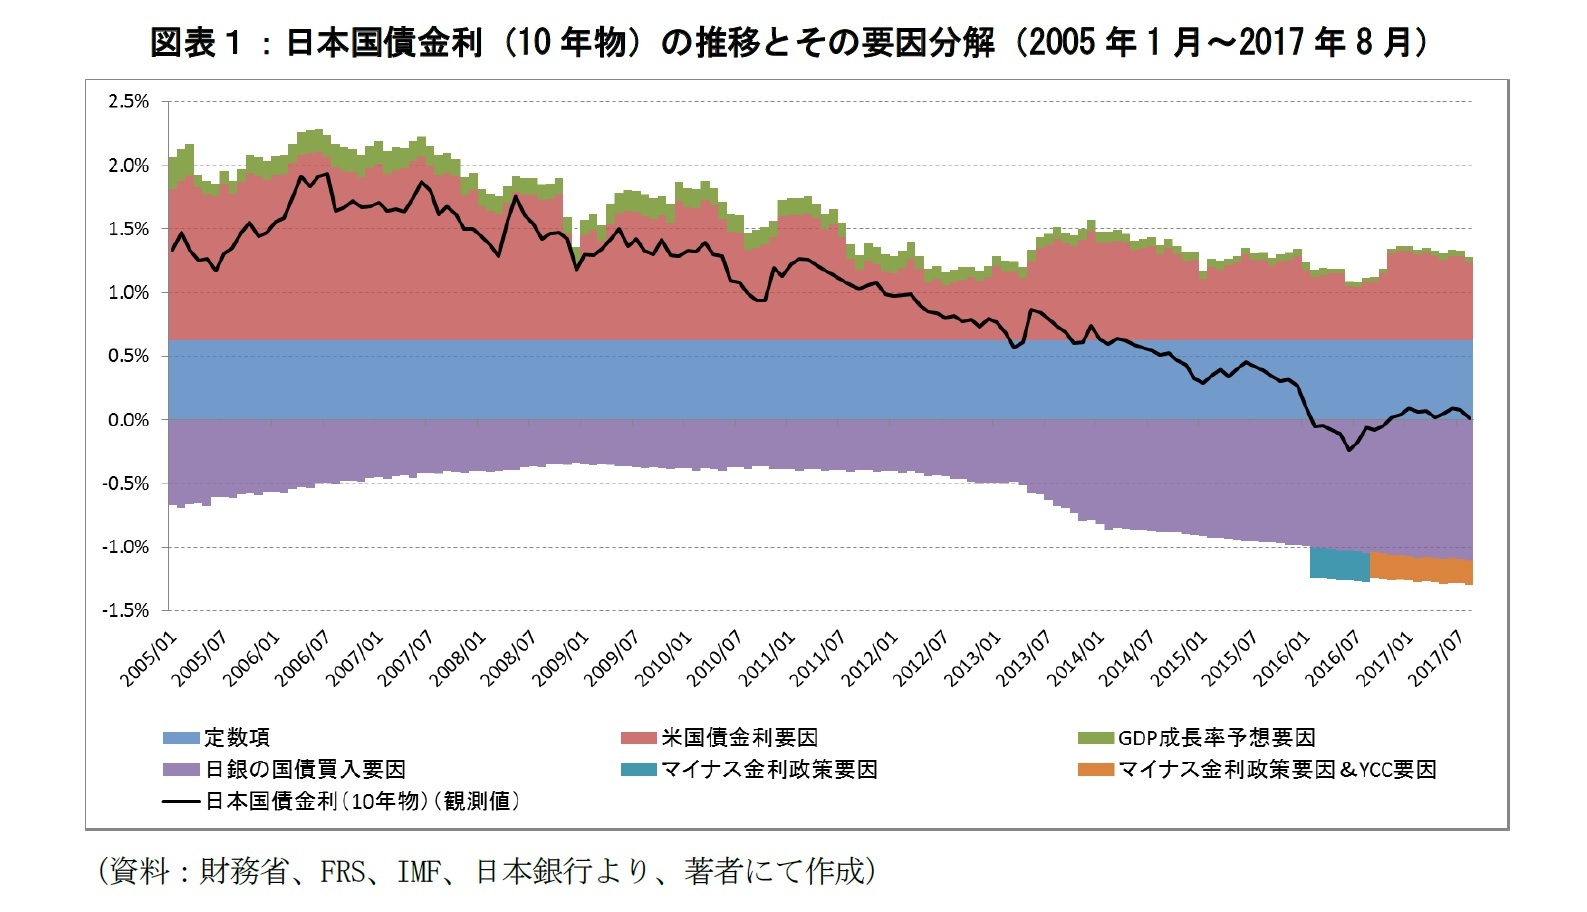 図表１：日本国債金利（10年物）の推移とその要因分解（2005年1月～2017年8月）